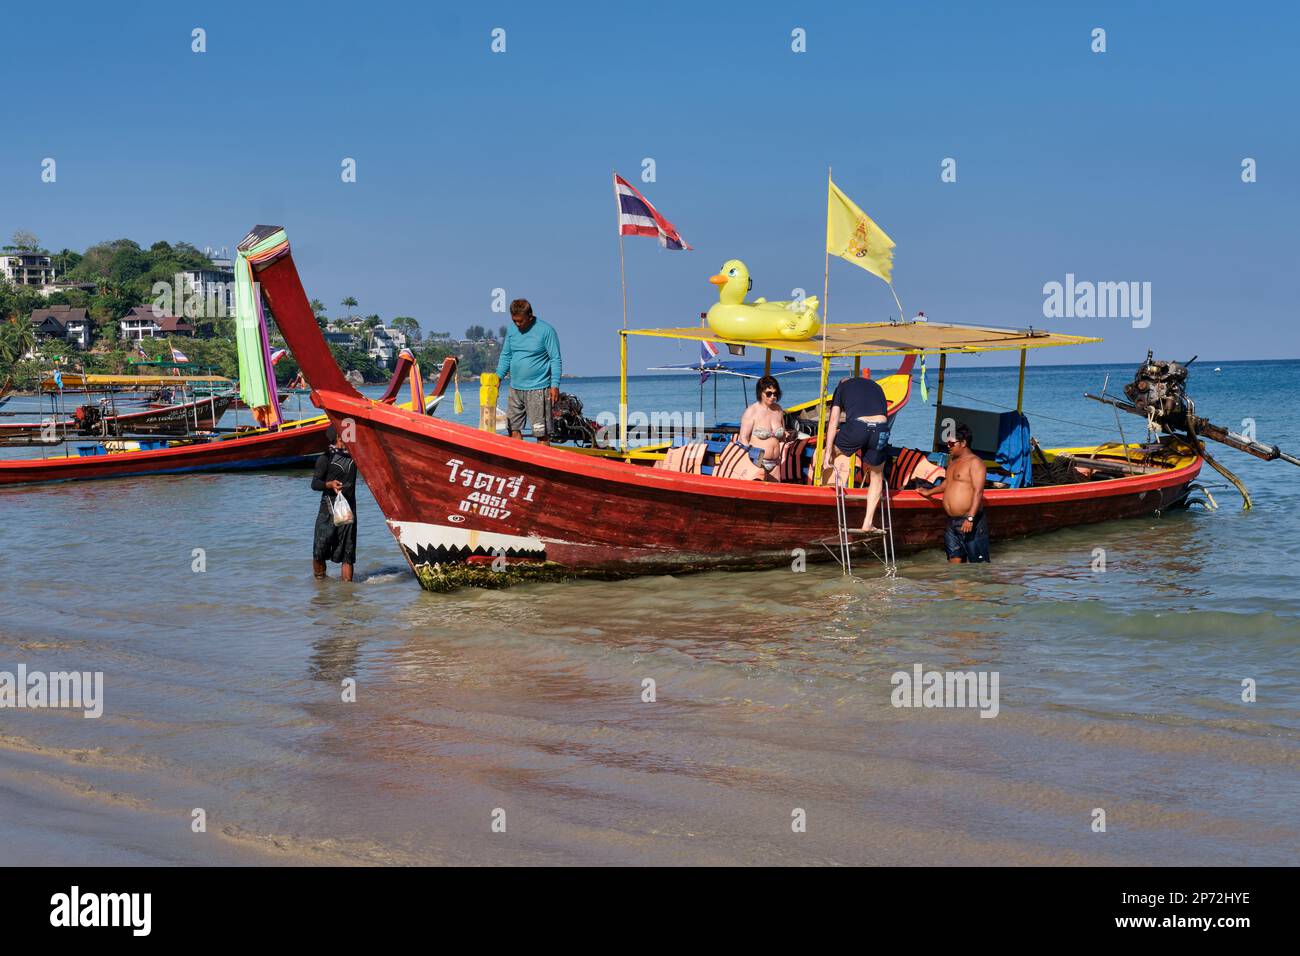 Un touriste monte à bord d'un bateau à longue queue à Kamala Beach, Phuket, Thaïlande, prêt pour une excursion en bateau Banque D'Images